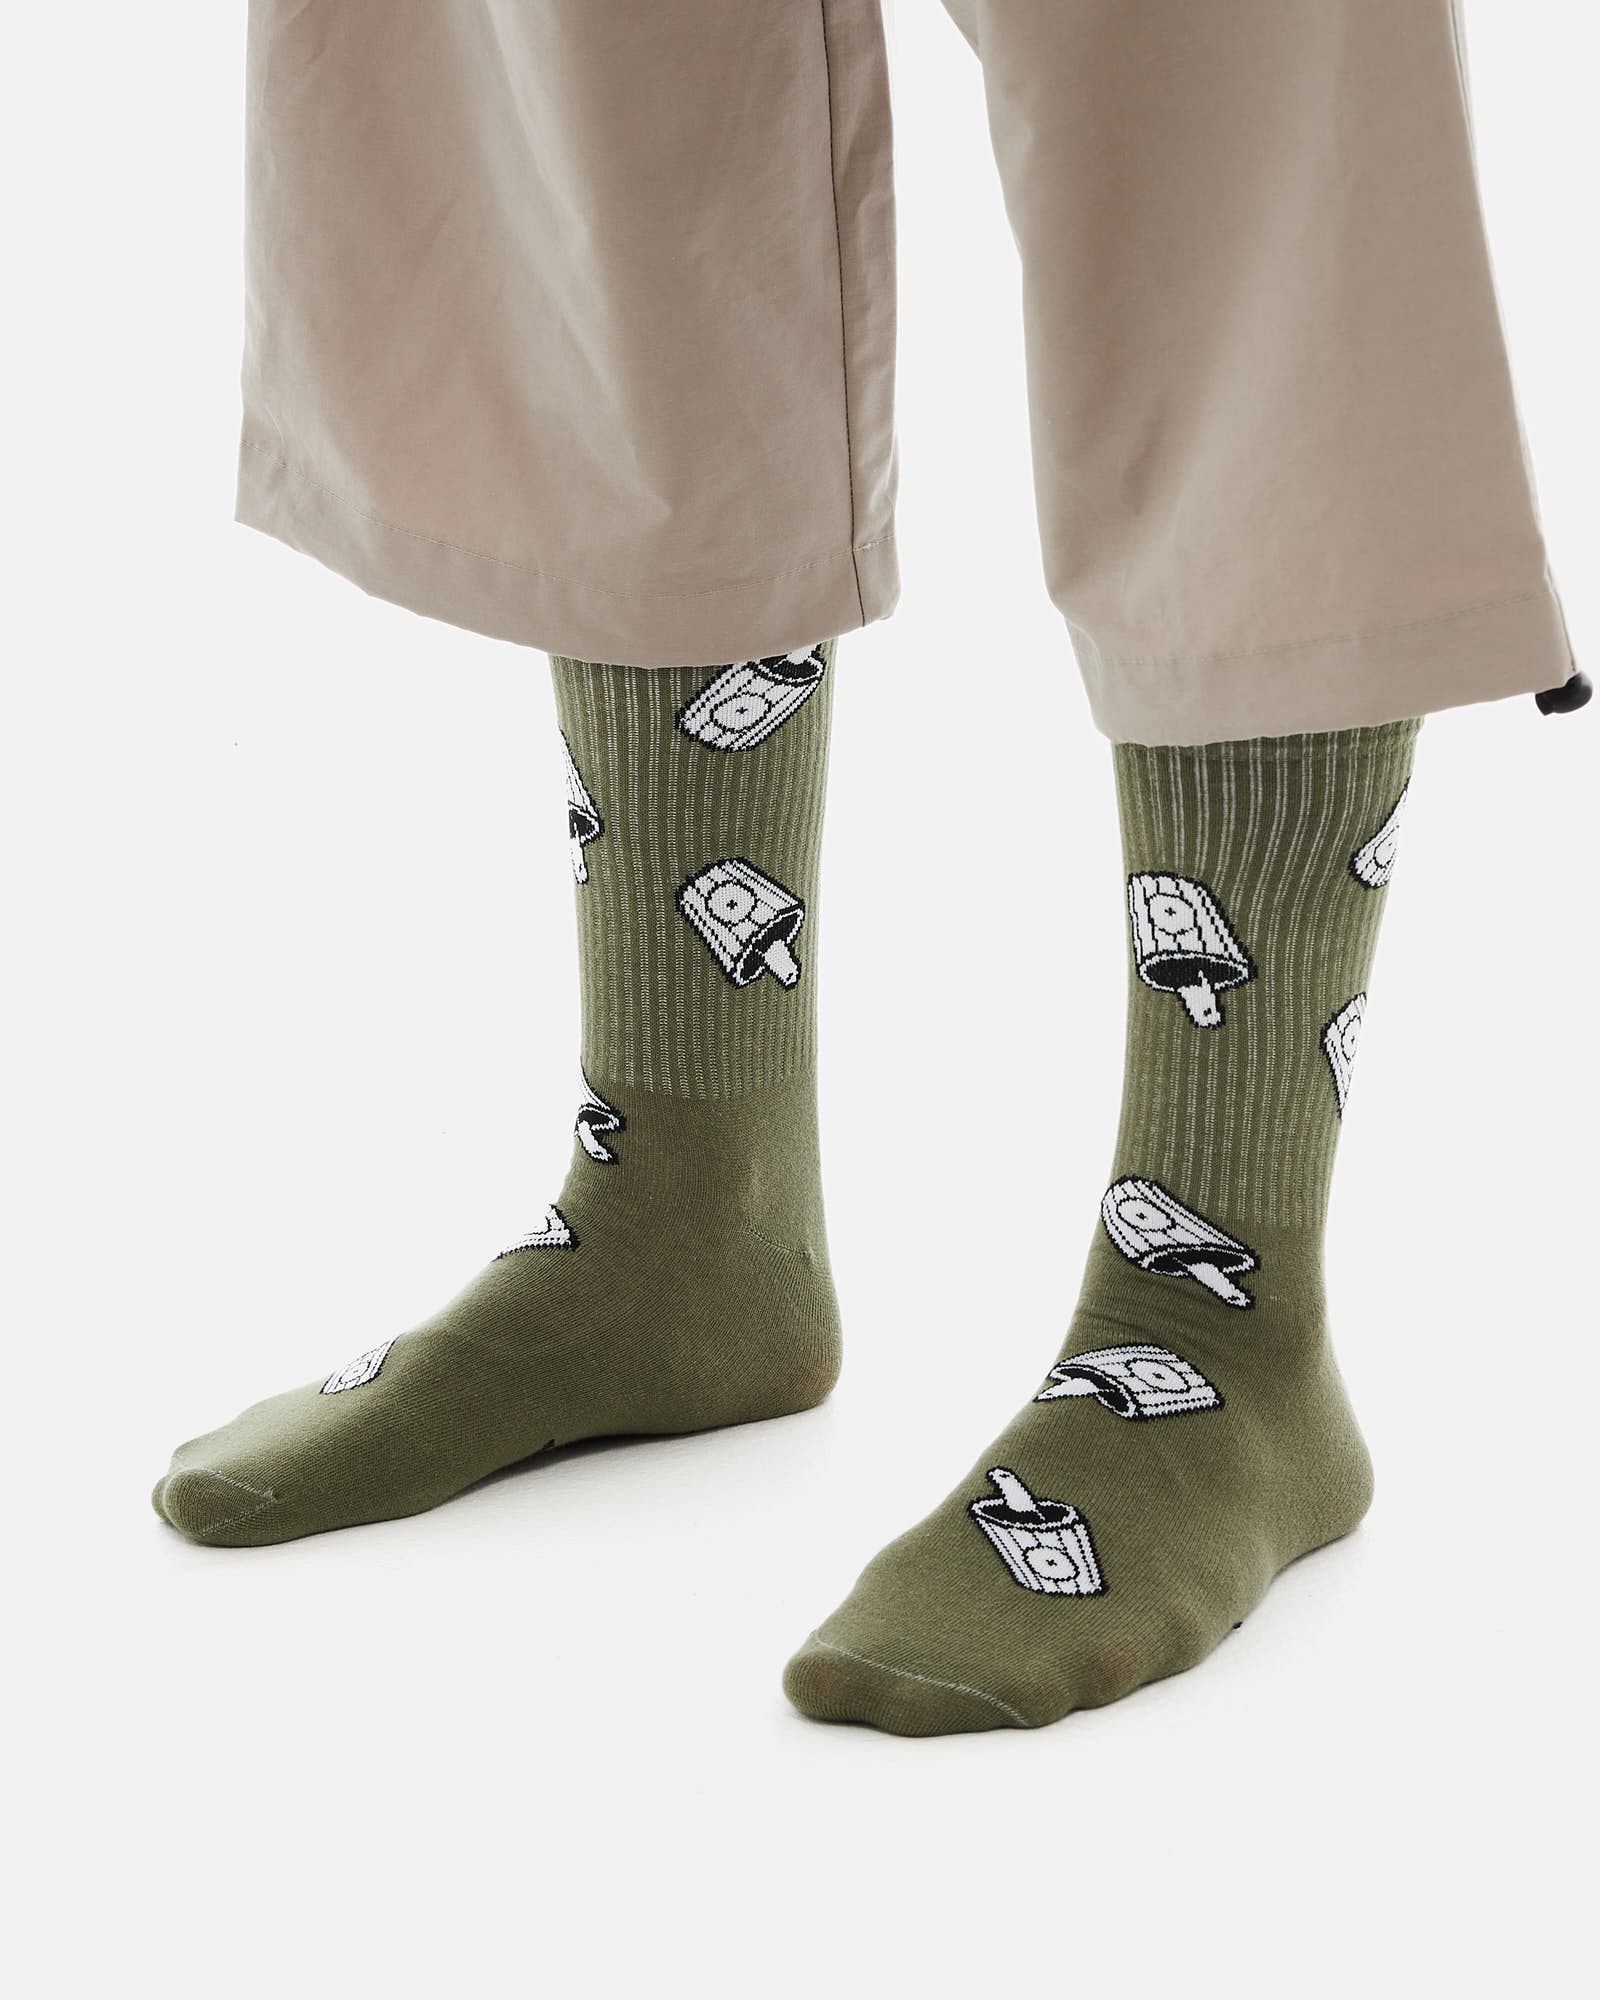 Носки Anteater Socks - фото 2